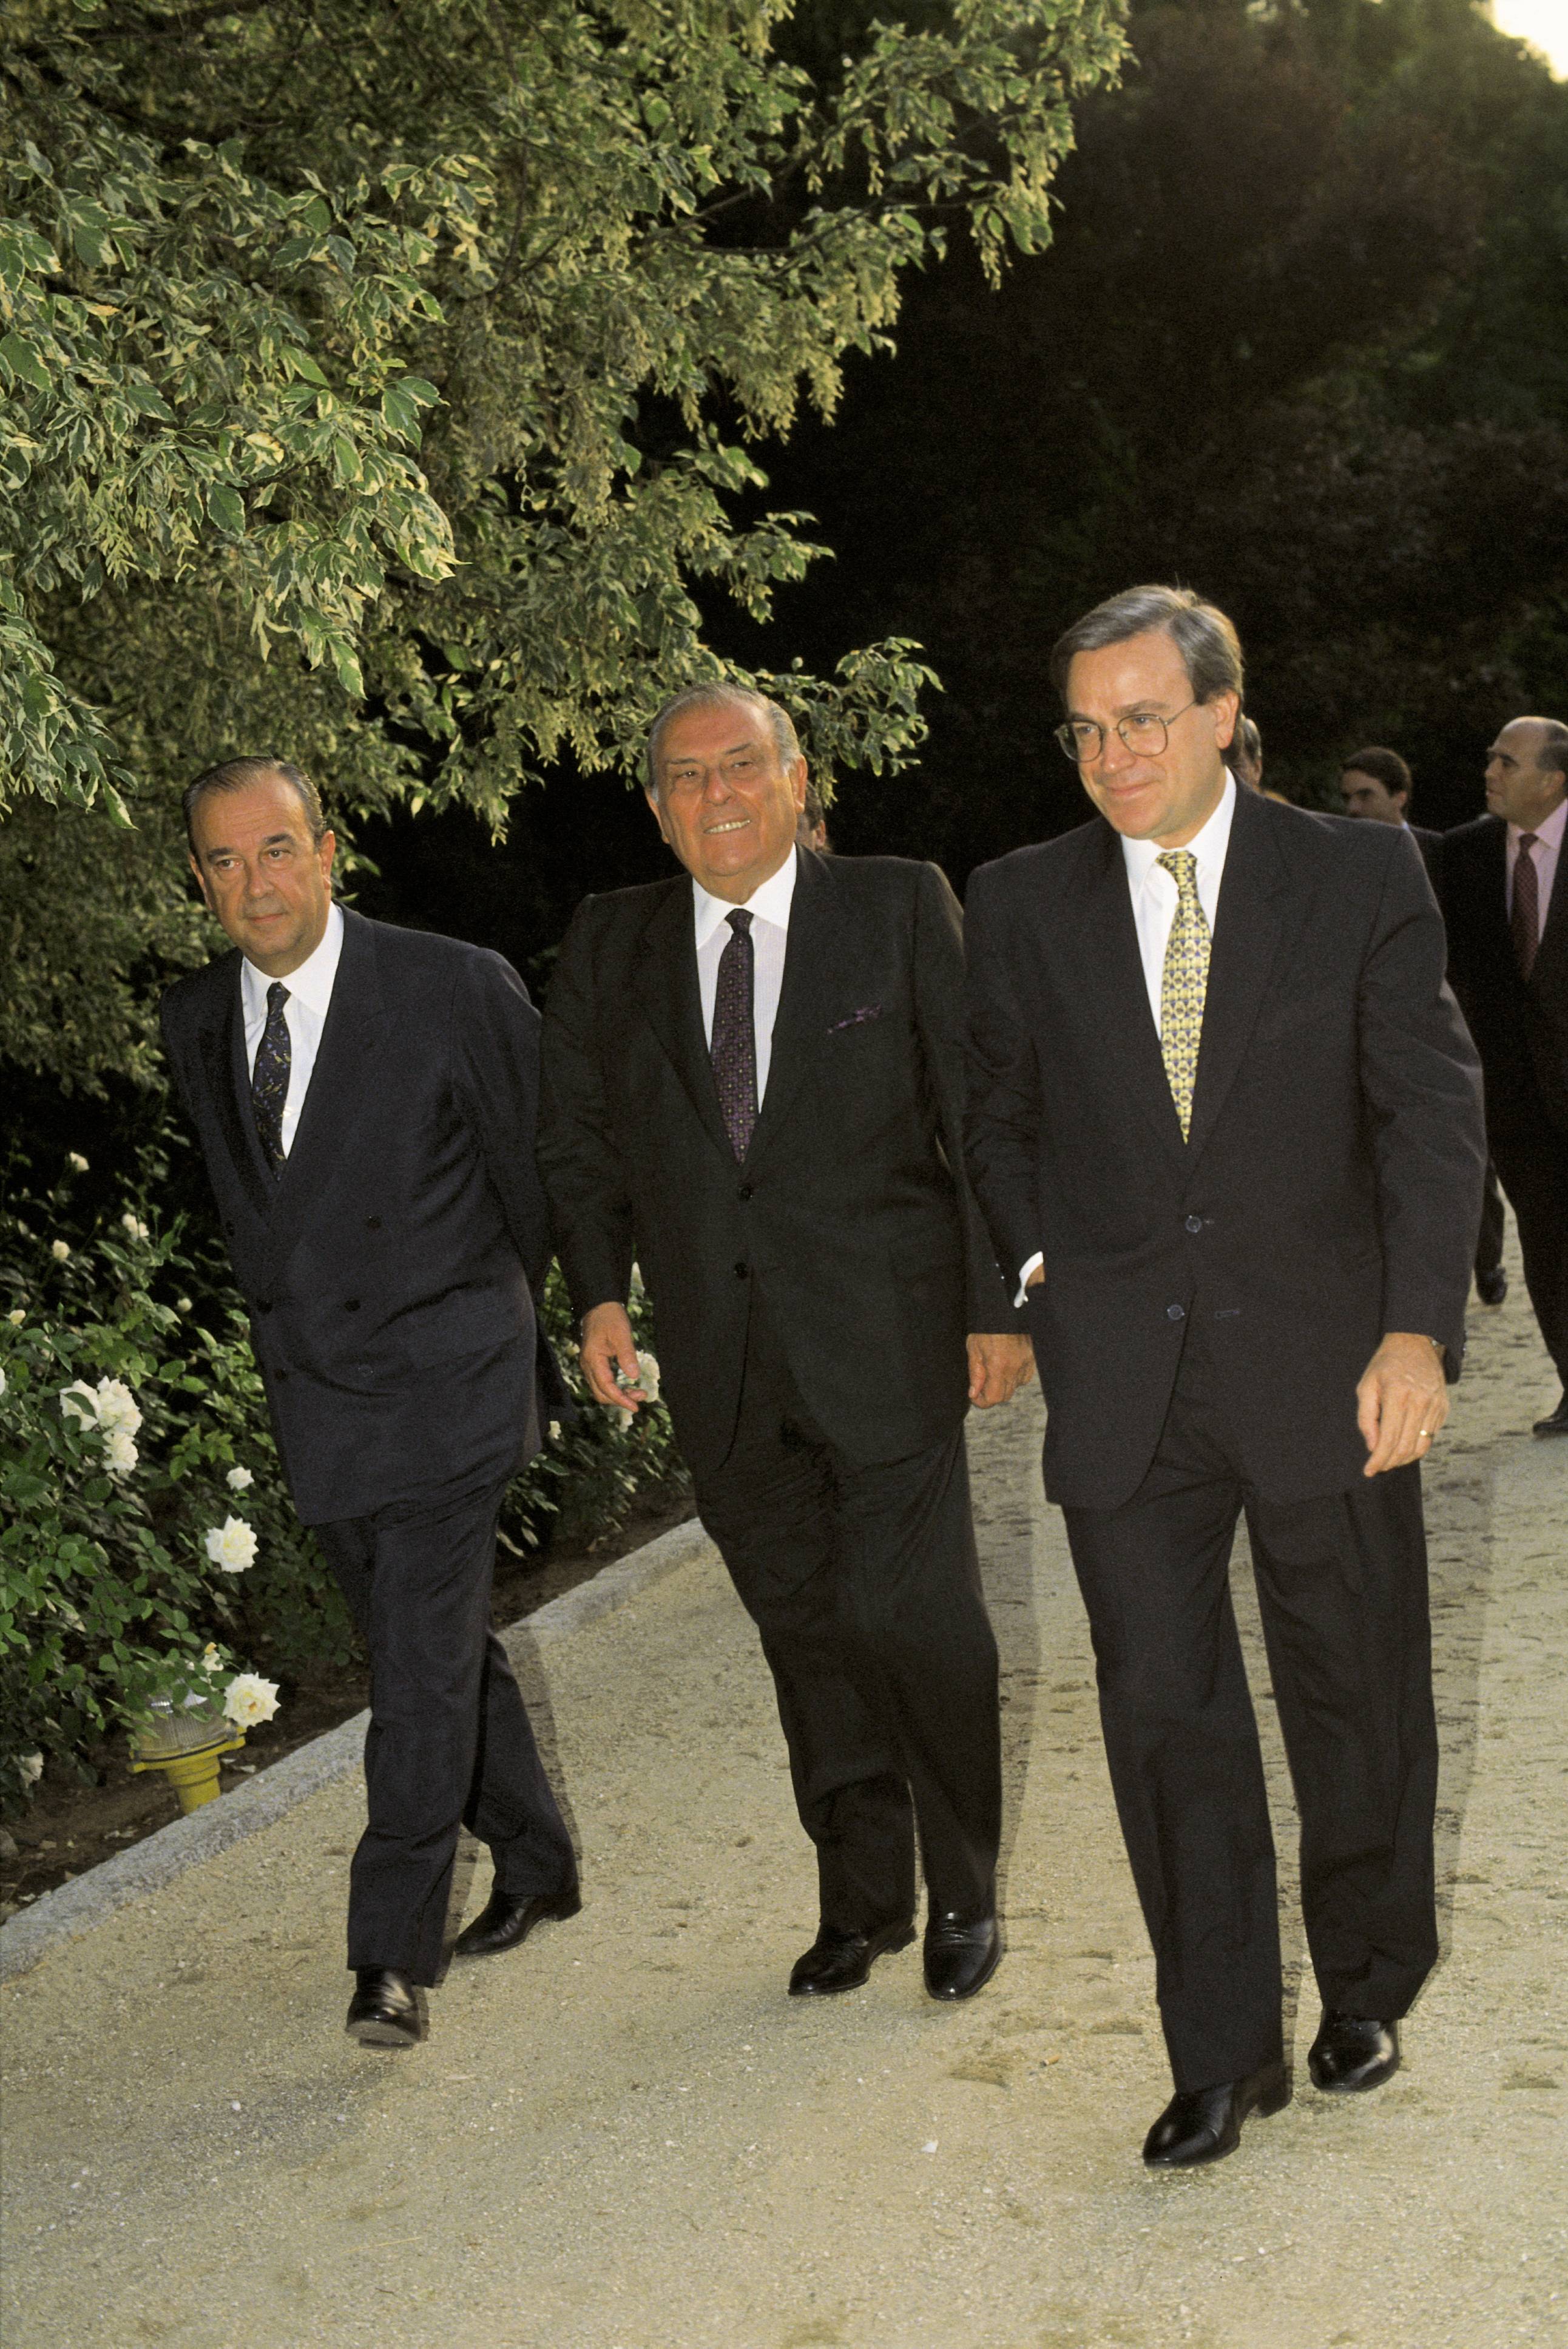 Banqueros españoles José María Amusategui, Alfonso Escamez y Francisco Luzón en España en abril de 2006. | Foto: Getty Images